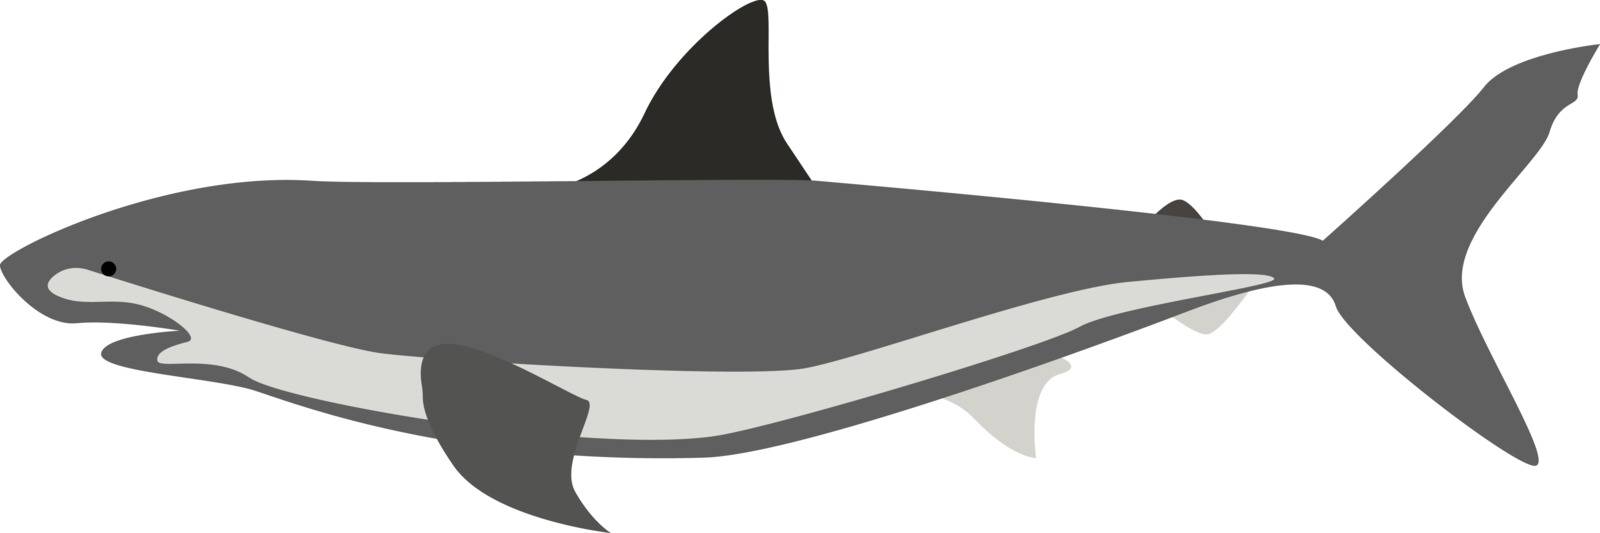 Shark, illustration, vector on white background. by Morphart